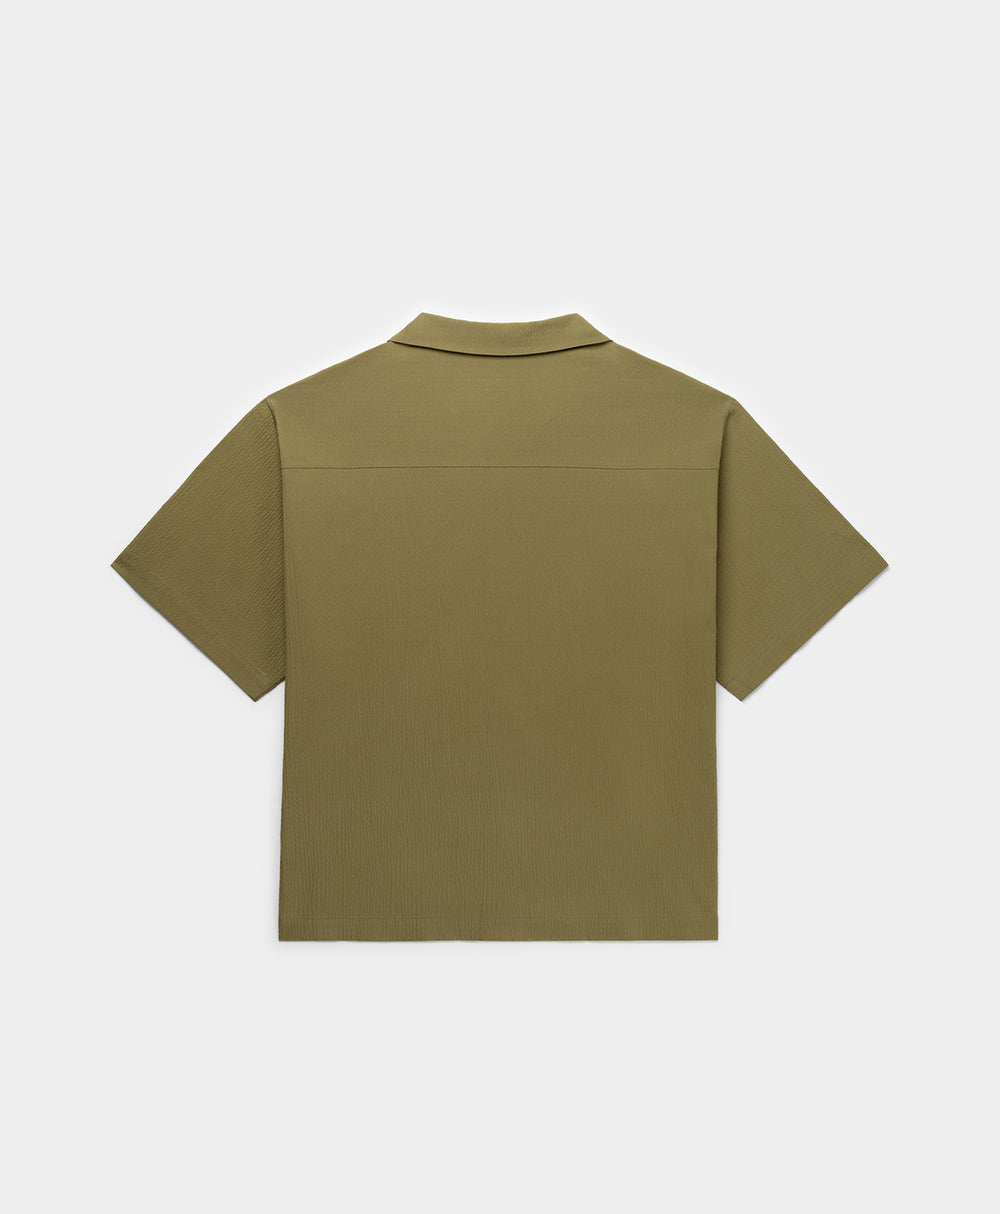 DP - Clover Green Pinira Shirt - Packshot - Rear